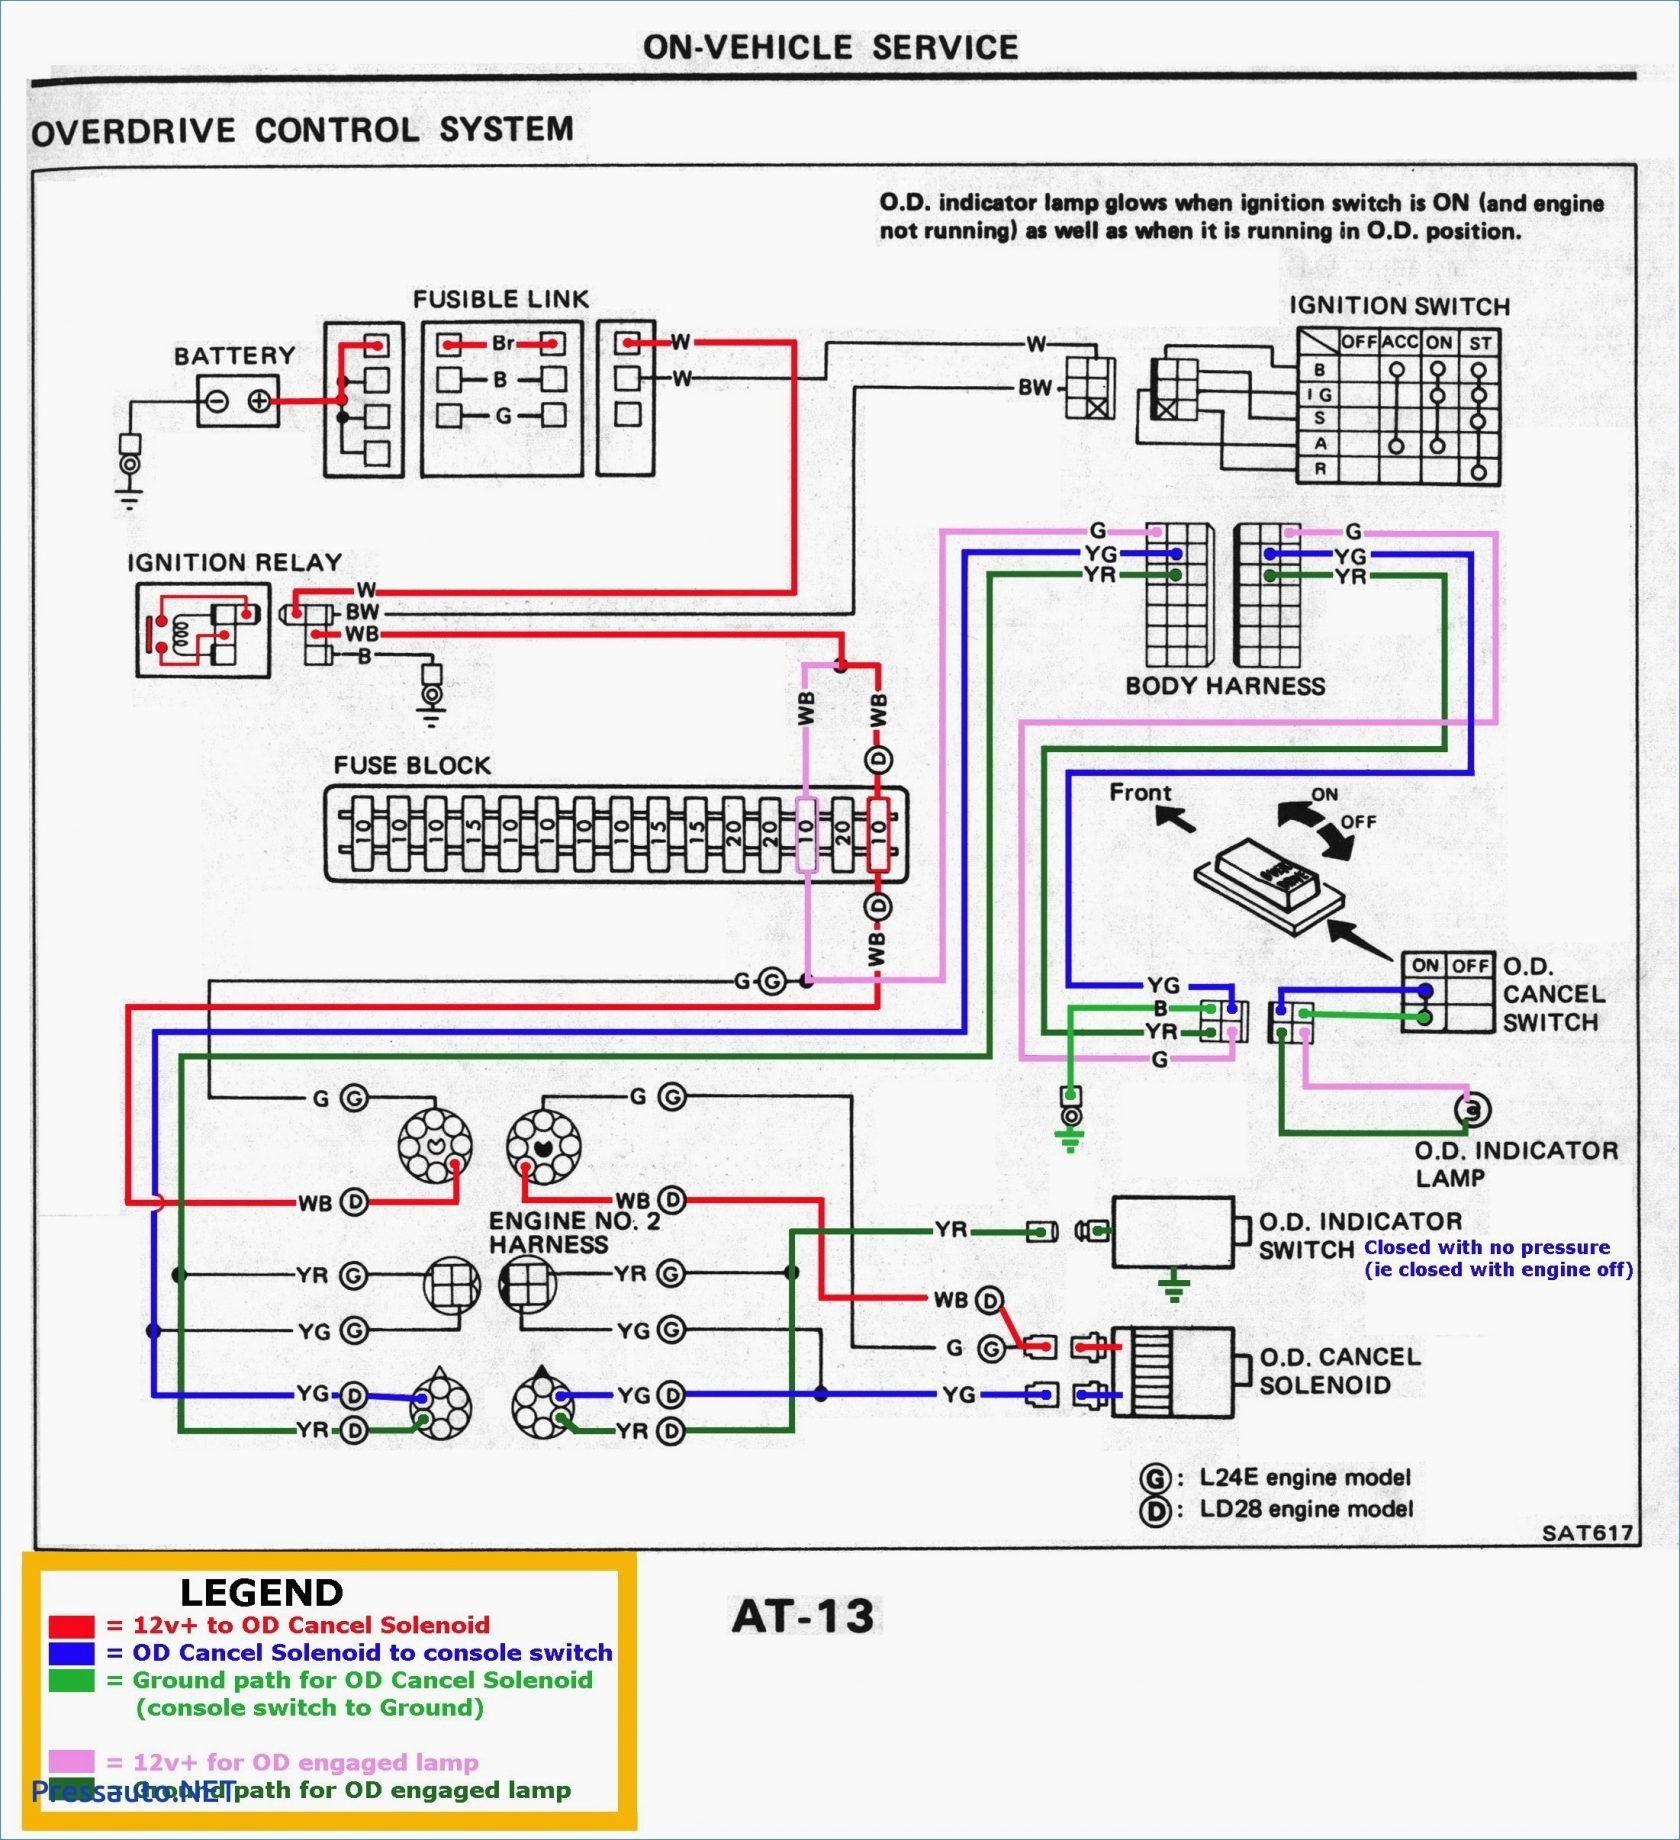 1992 Ez-go Wiring Diagram Echlin solenoid Switch Wiring Diagram Of 1992 Ez-go Wiring Diagram